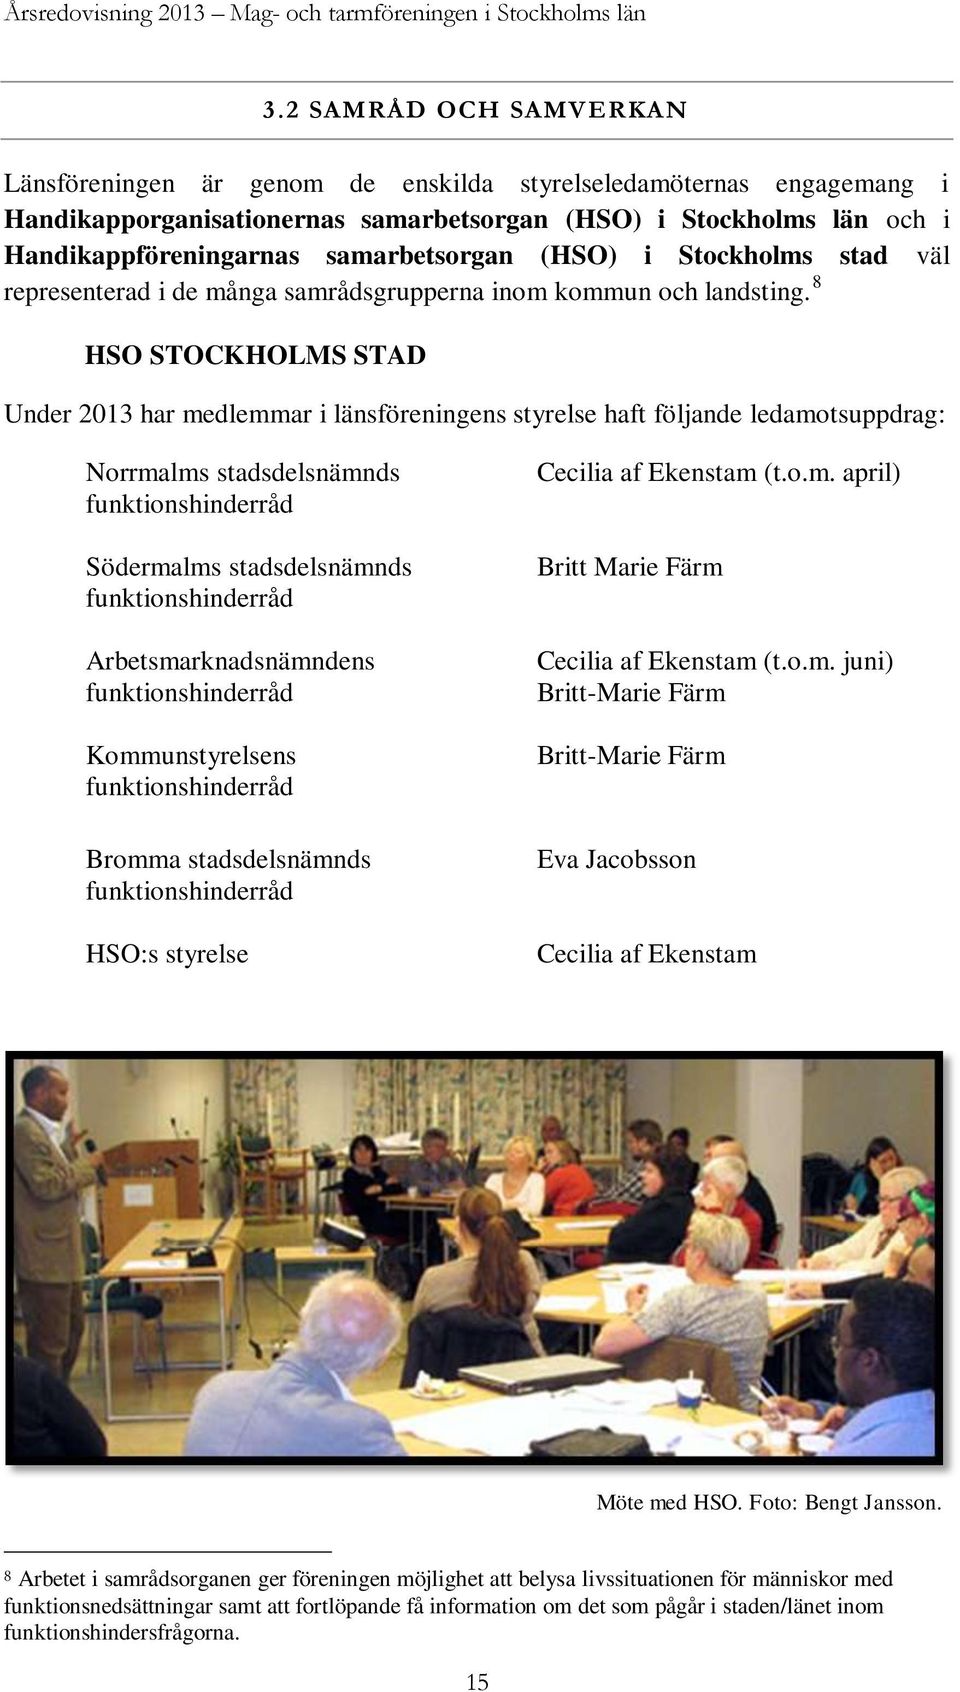 samarbetsorgan (HSO) i Stockholms stad väl representerad i de många samrådsgrupperna inom kommun och landsting.